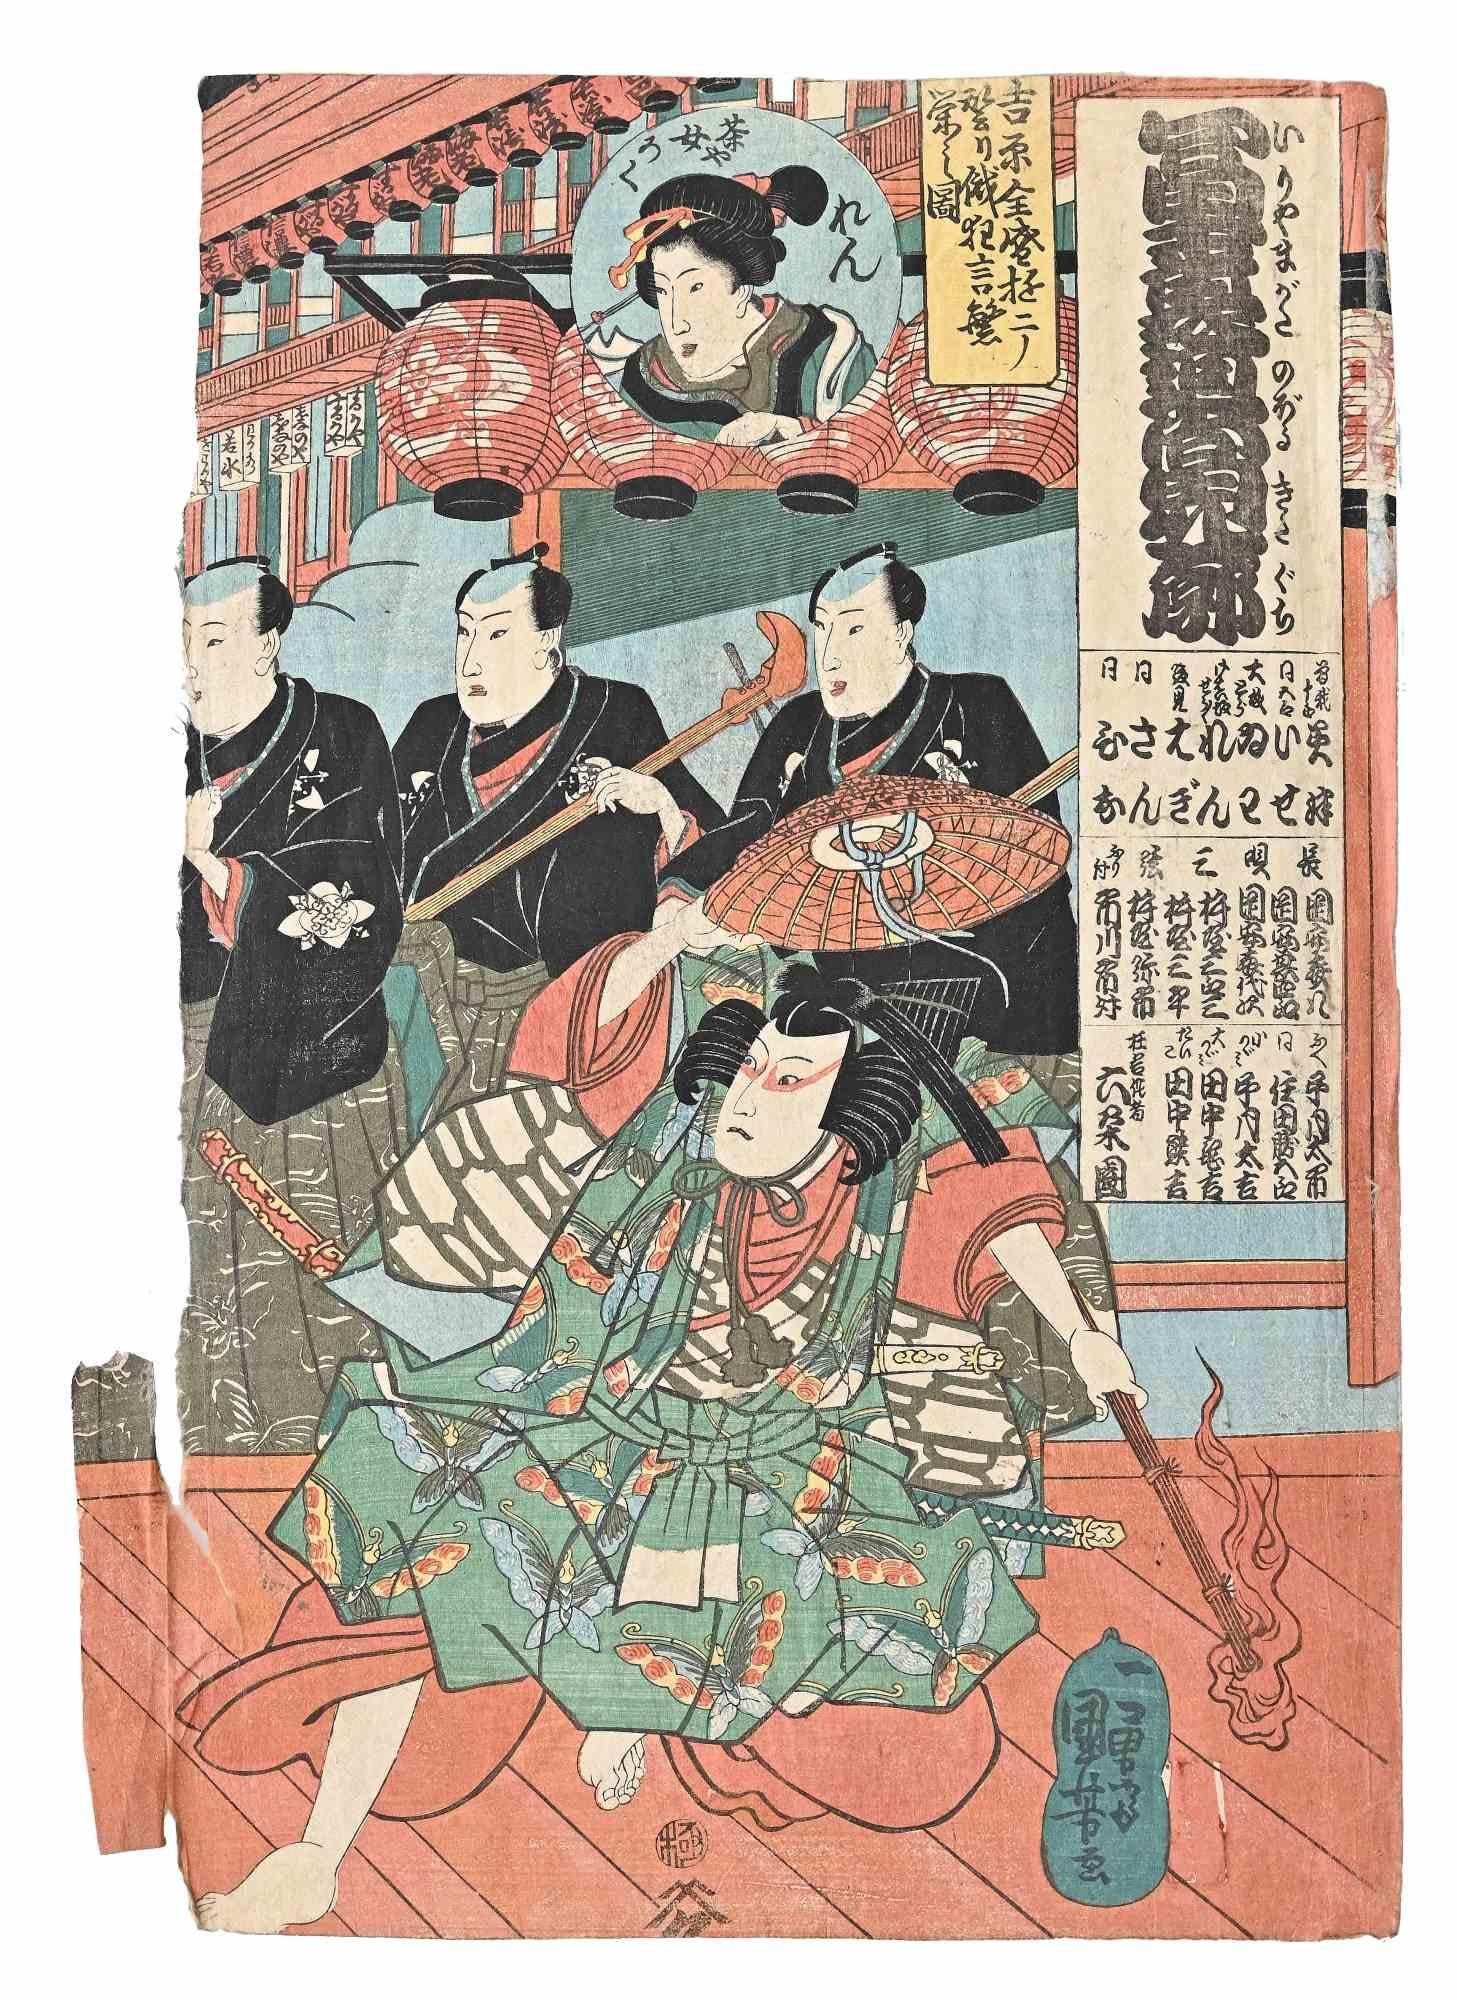 Utagawa Kunisada (Toyokuni III) Figurative Print - Kabuki Scene - Woodblock Print by Utagawa Kunisada - Mid-19th Century